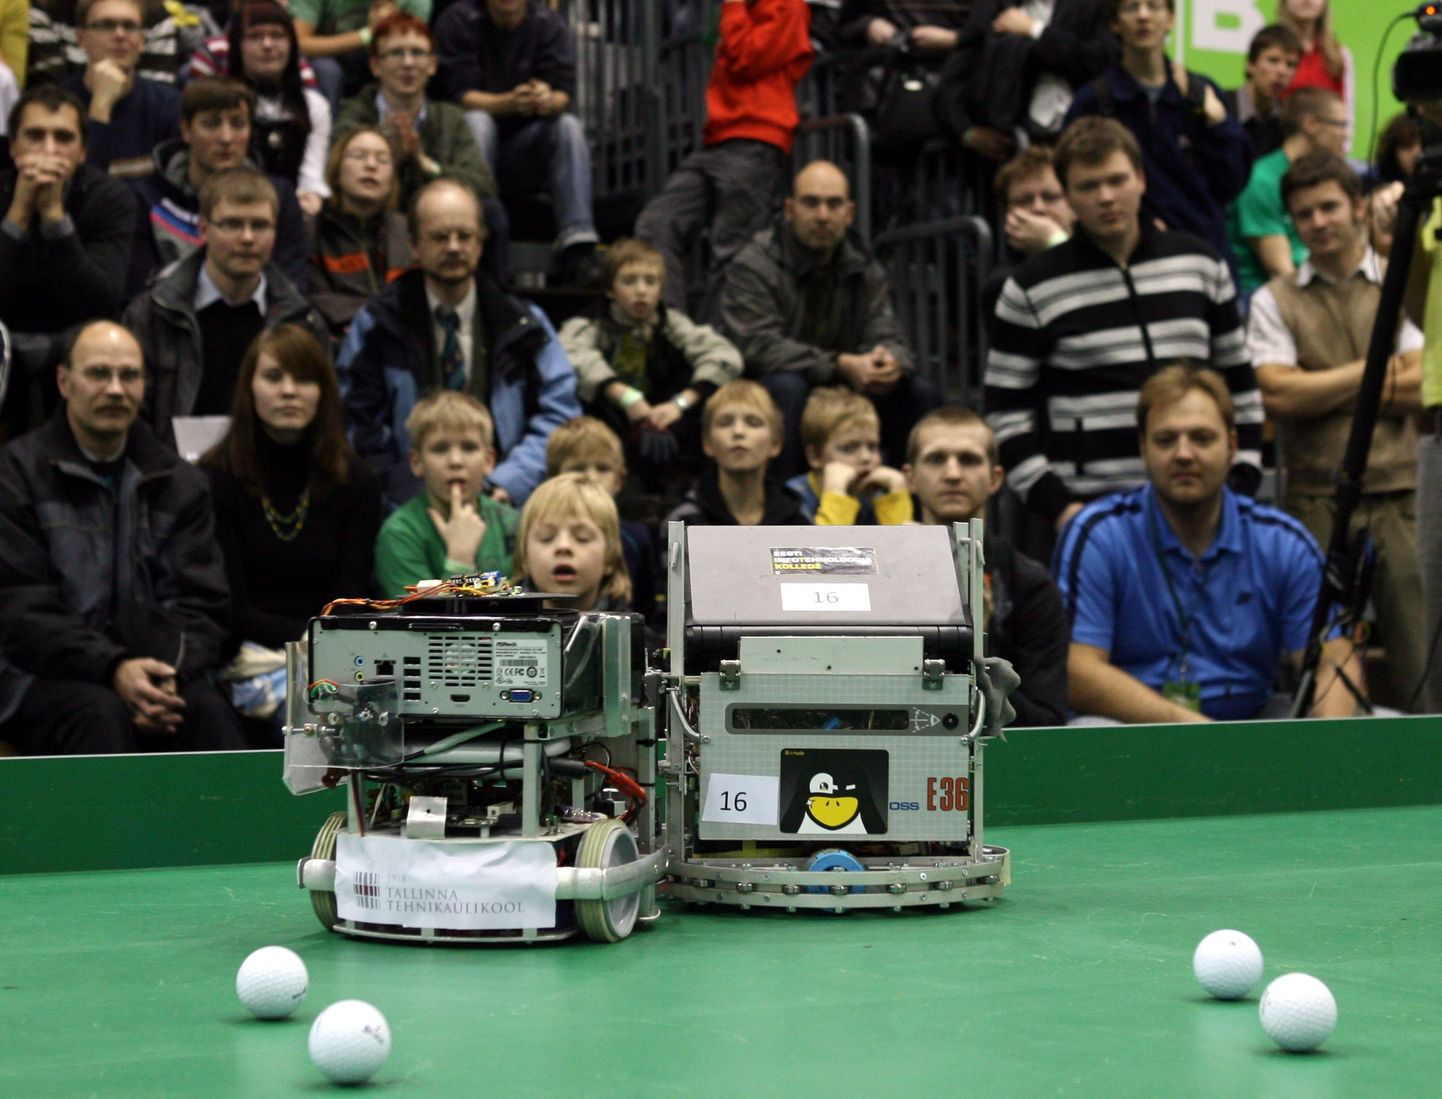 Robotite jalgpall pakkus palju põnevust. seda enam, et ühe palli asemel pidid masinad väravasse lööma kümme palli.